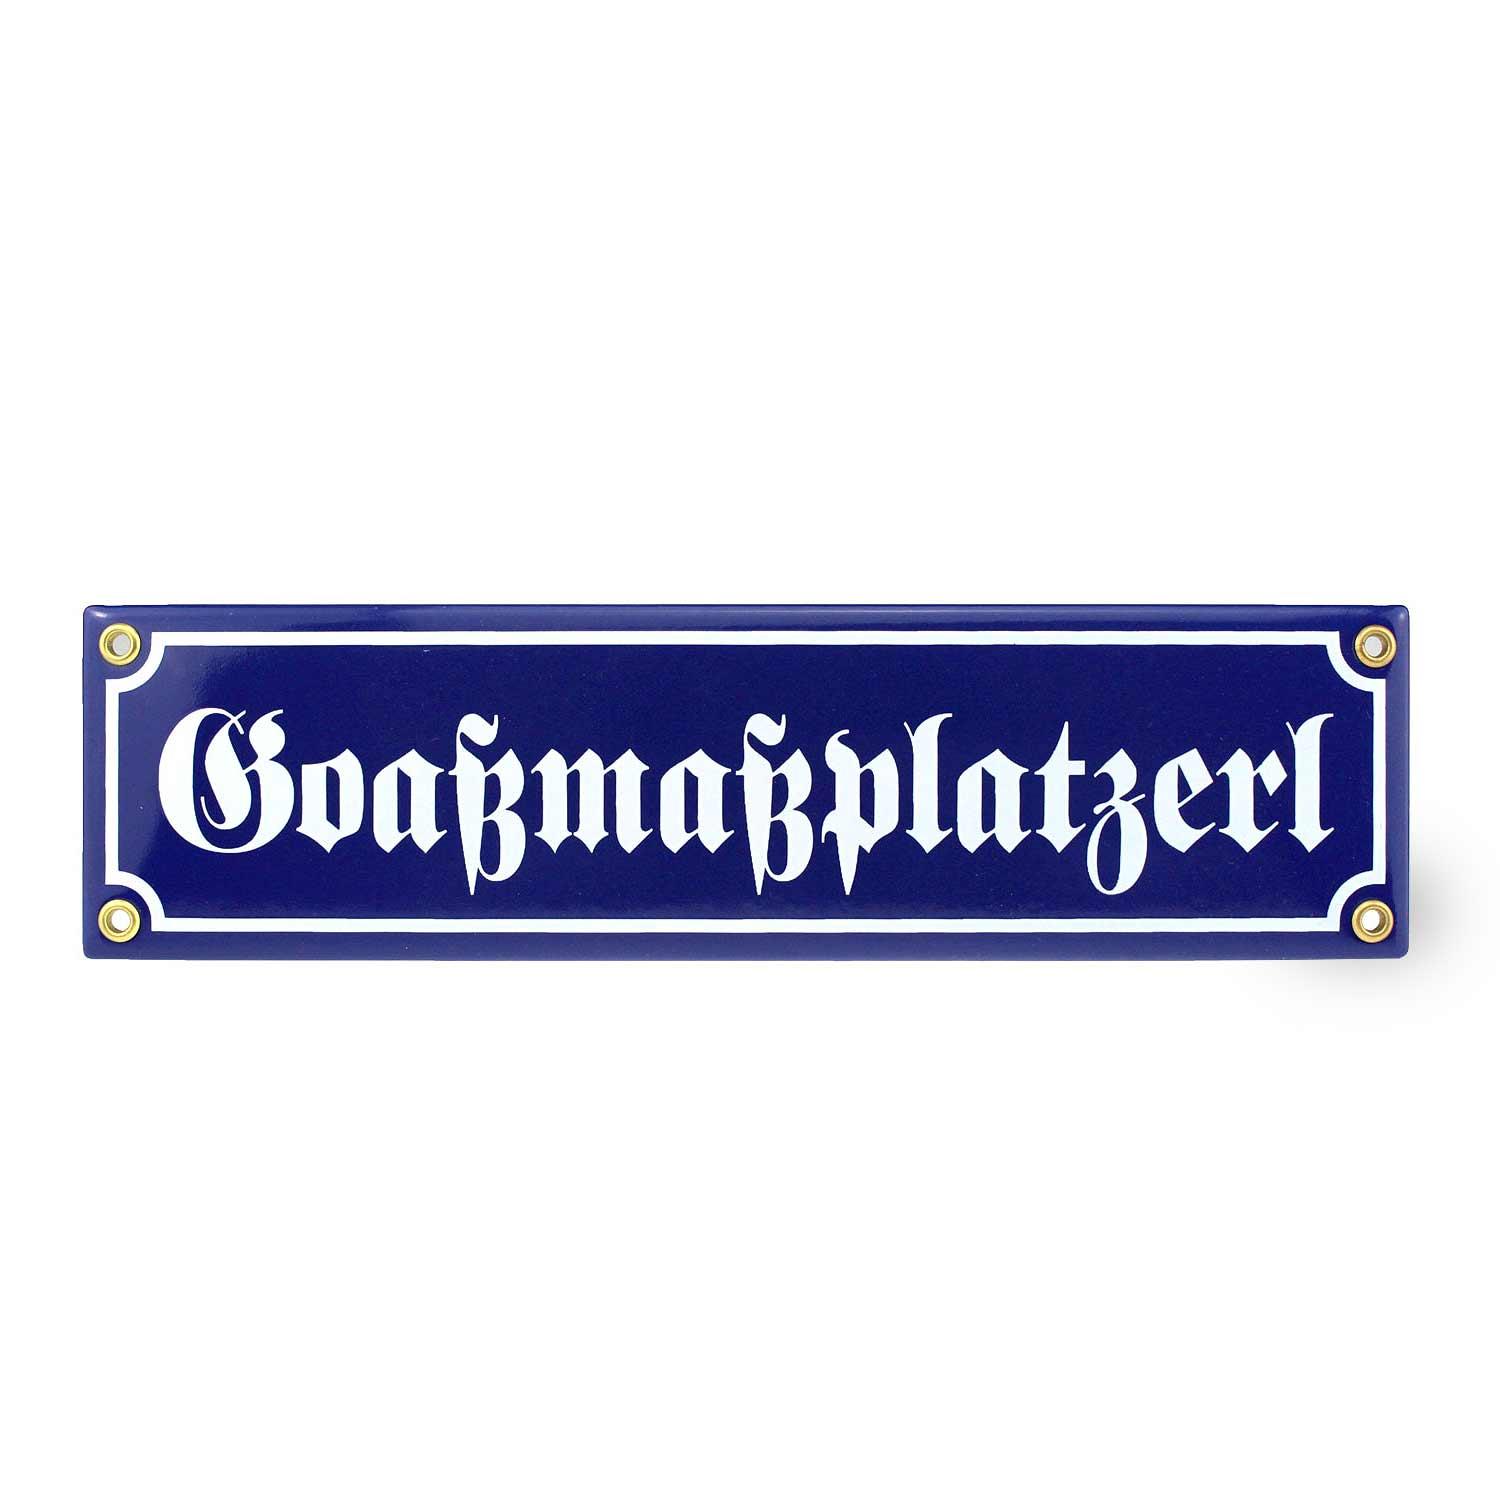 Emaille-Schild "Goaßmaßplatzerl" - bavariashop - mei LebensGfui